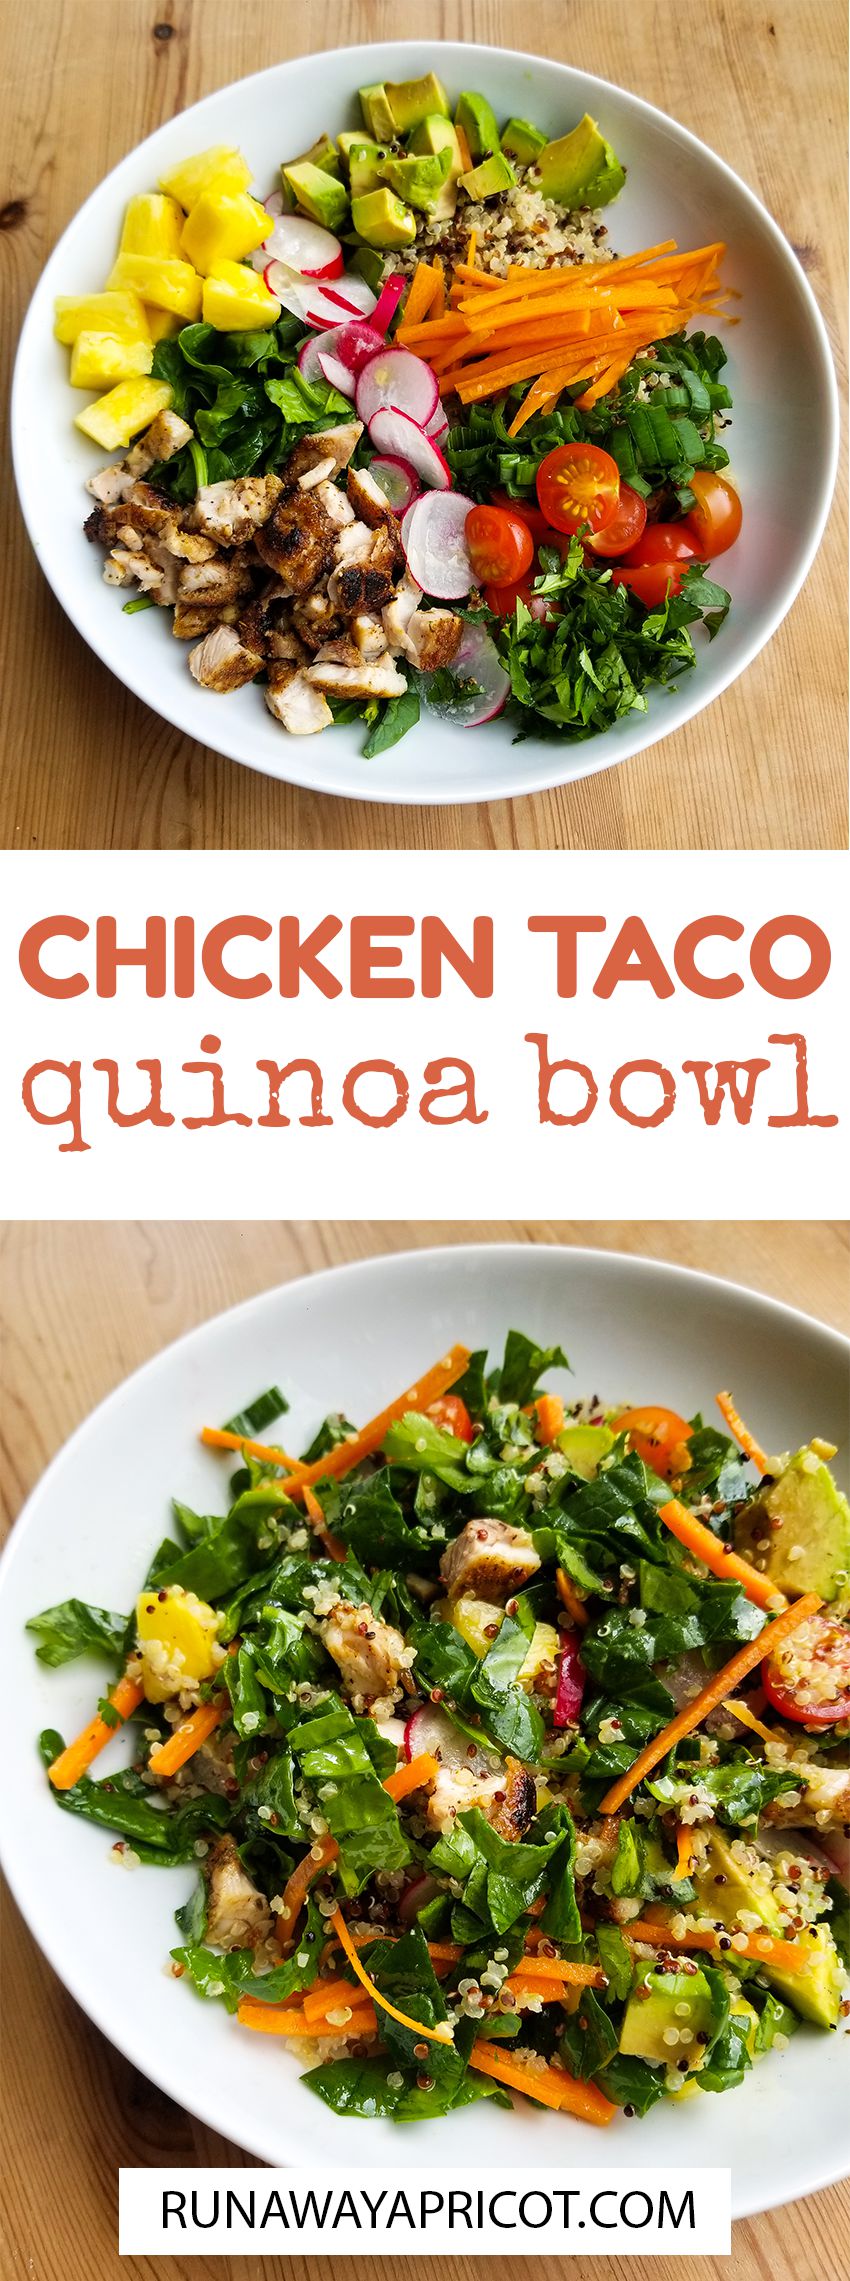 Chicken Taco Quinoa Bowl - Runaway Apricot